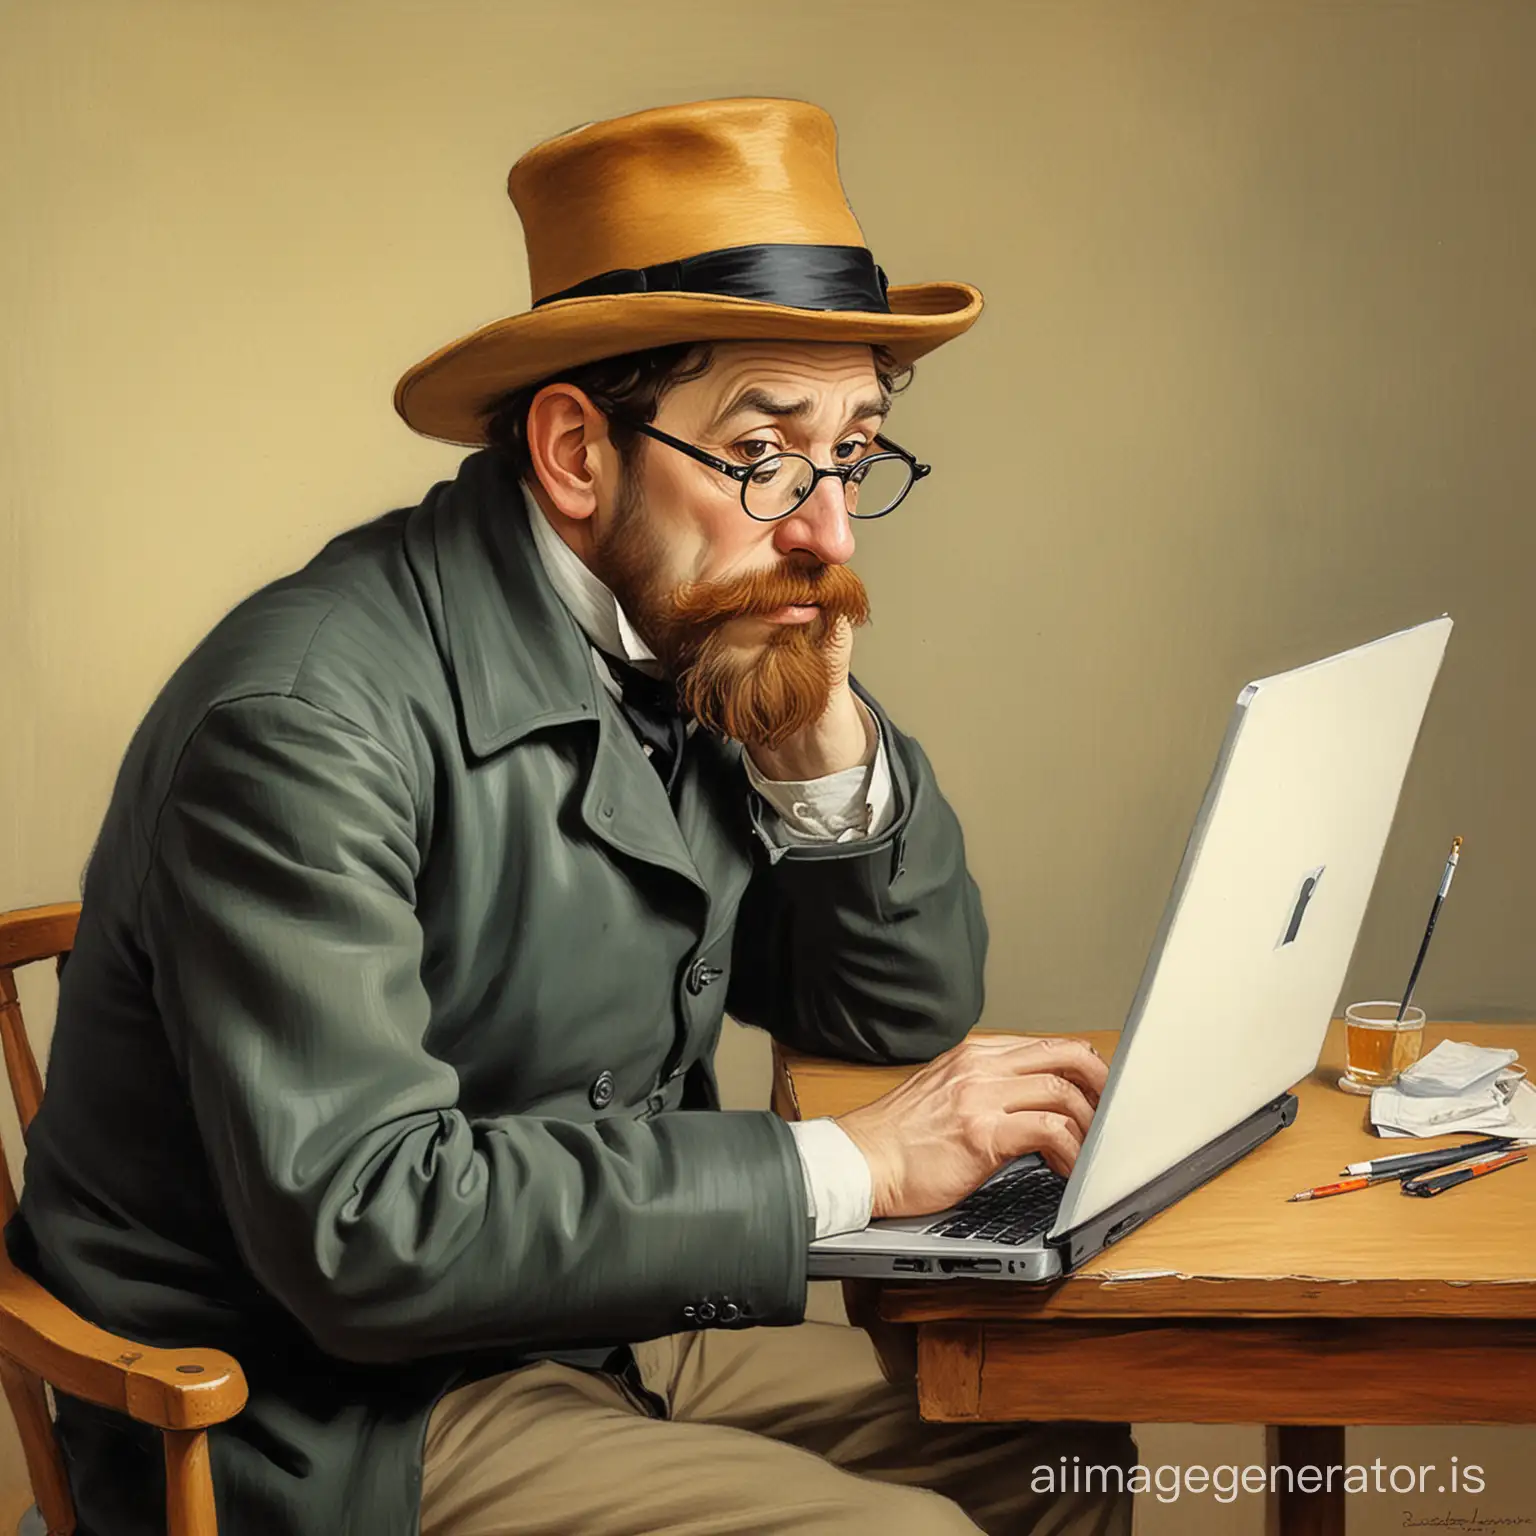 une caricature représentant le peintre toulouse lautrec utilisant un laptop